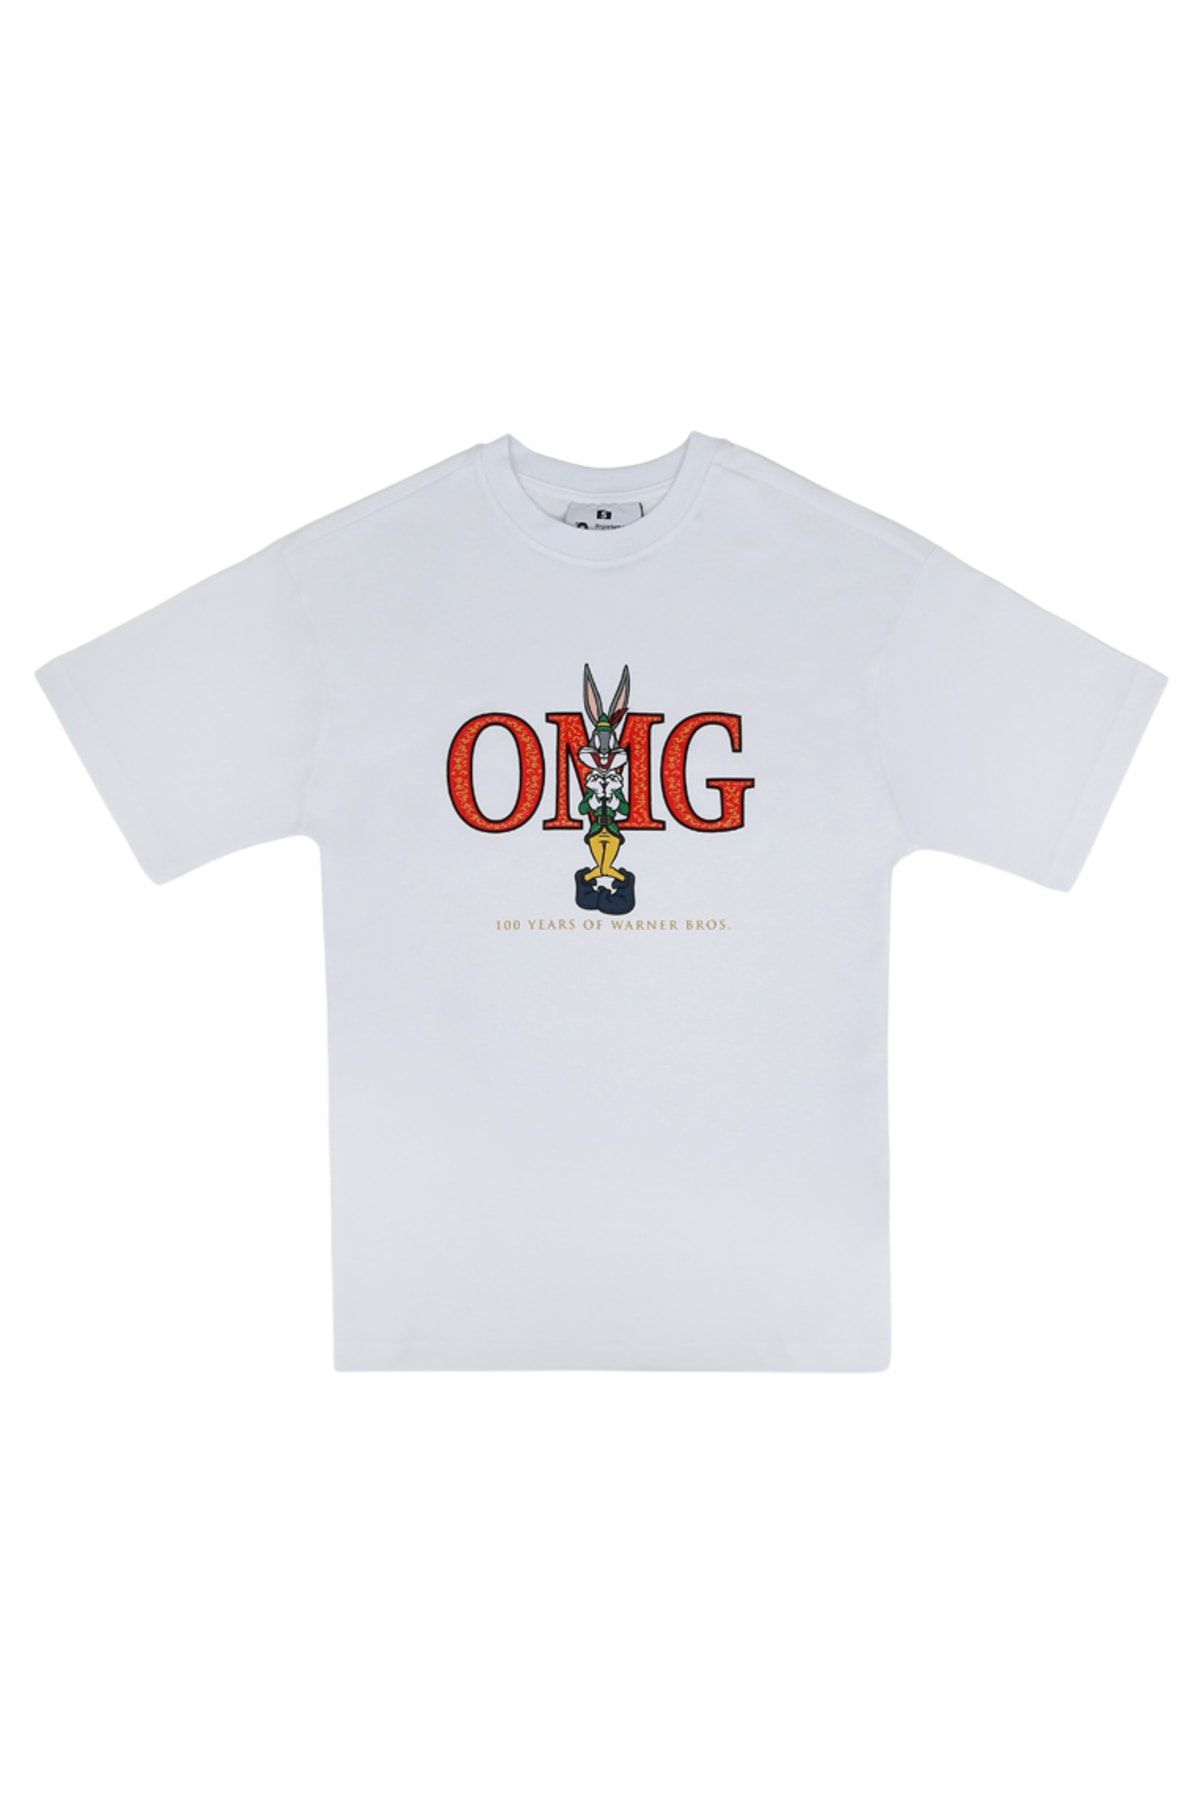 Dogo Unisex Vegan Beyaz T-Shirt - Warner Bros OMG Tasarım